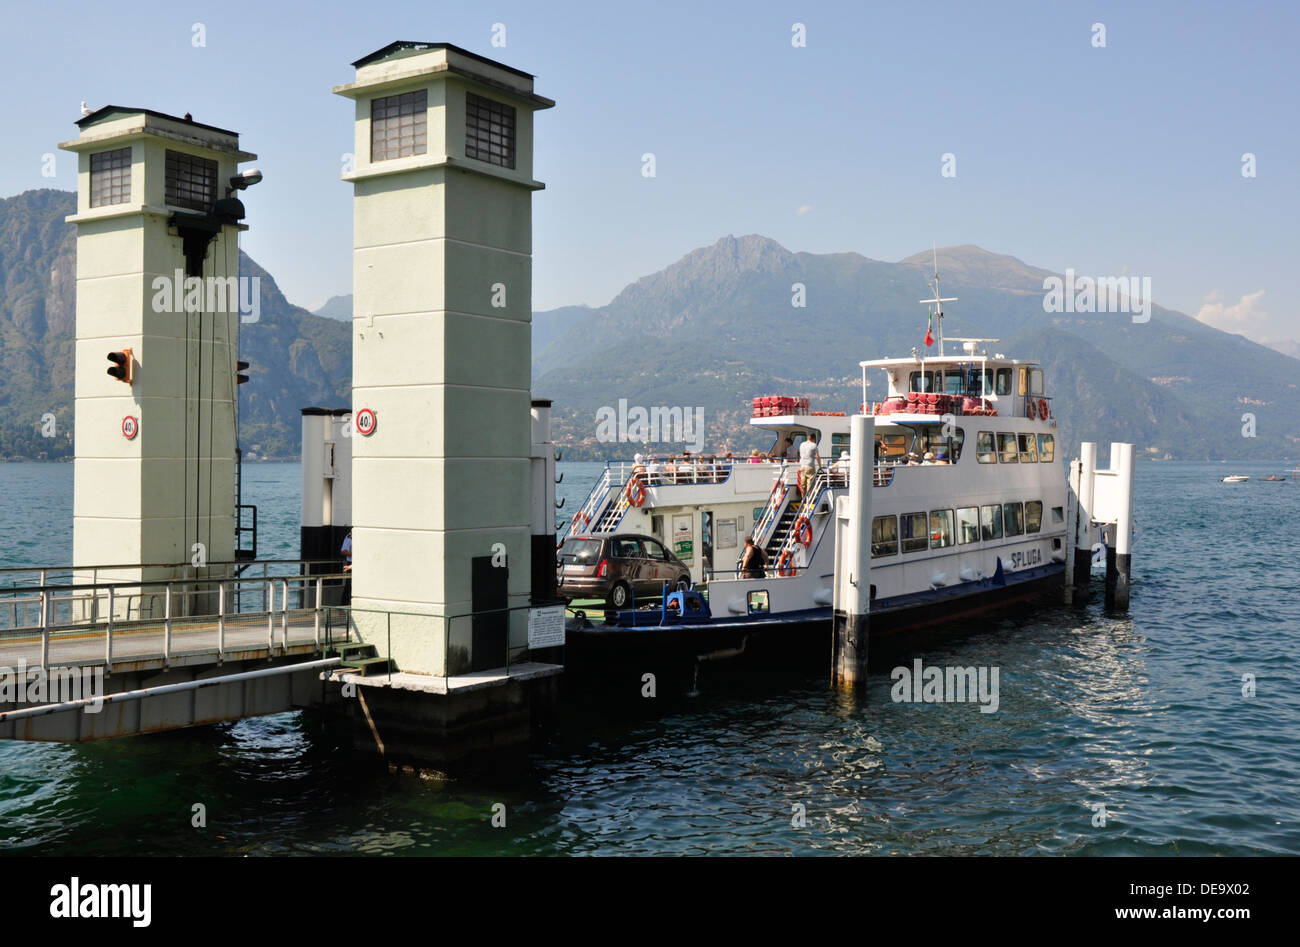 Italie - Lac de Côme - Bellagio - la voiture et les passagers à la station de bateau - plein soleil - blue sky - réflexions Banque D'Images